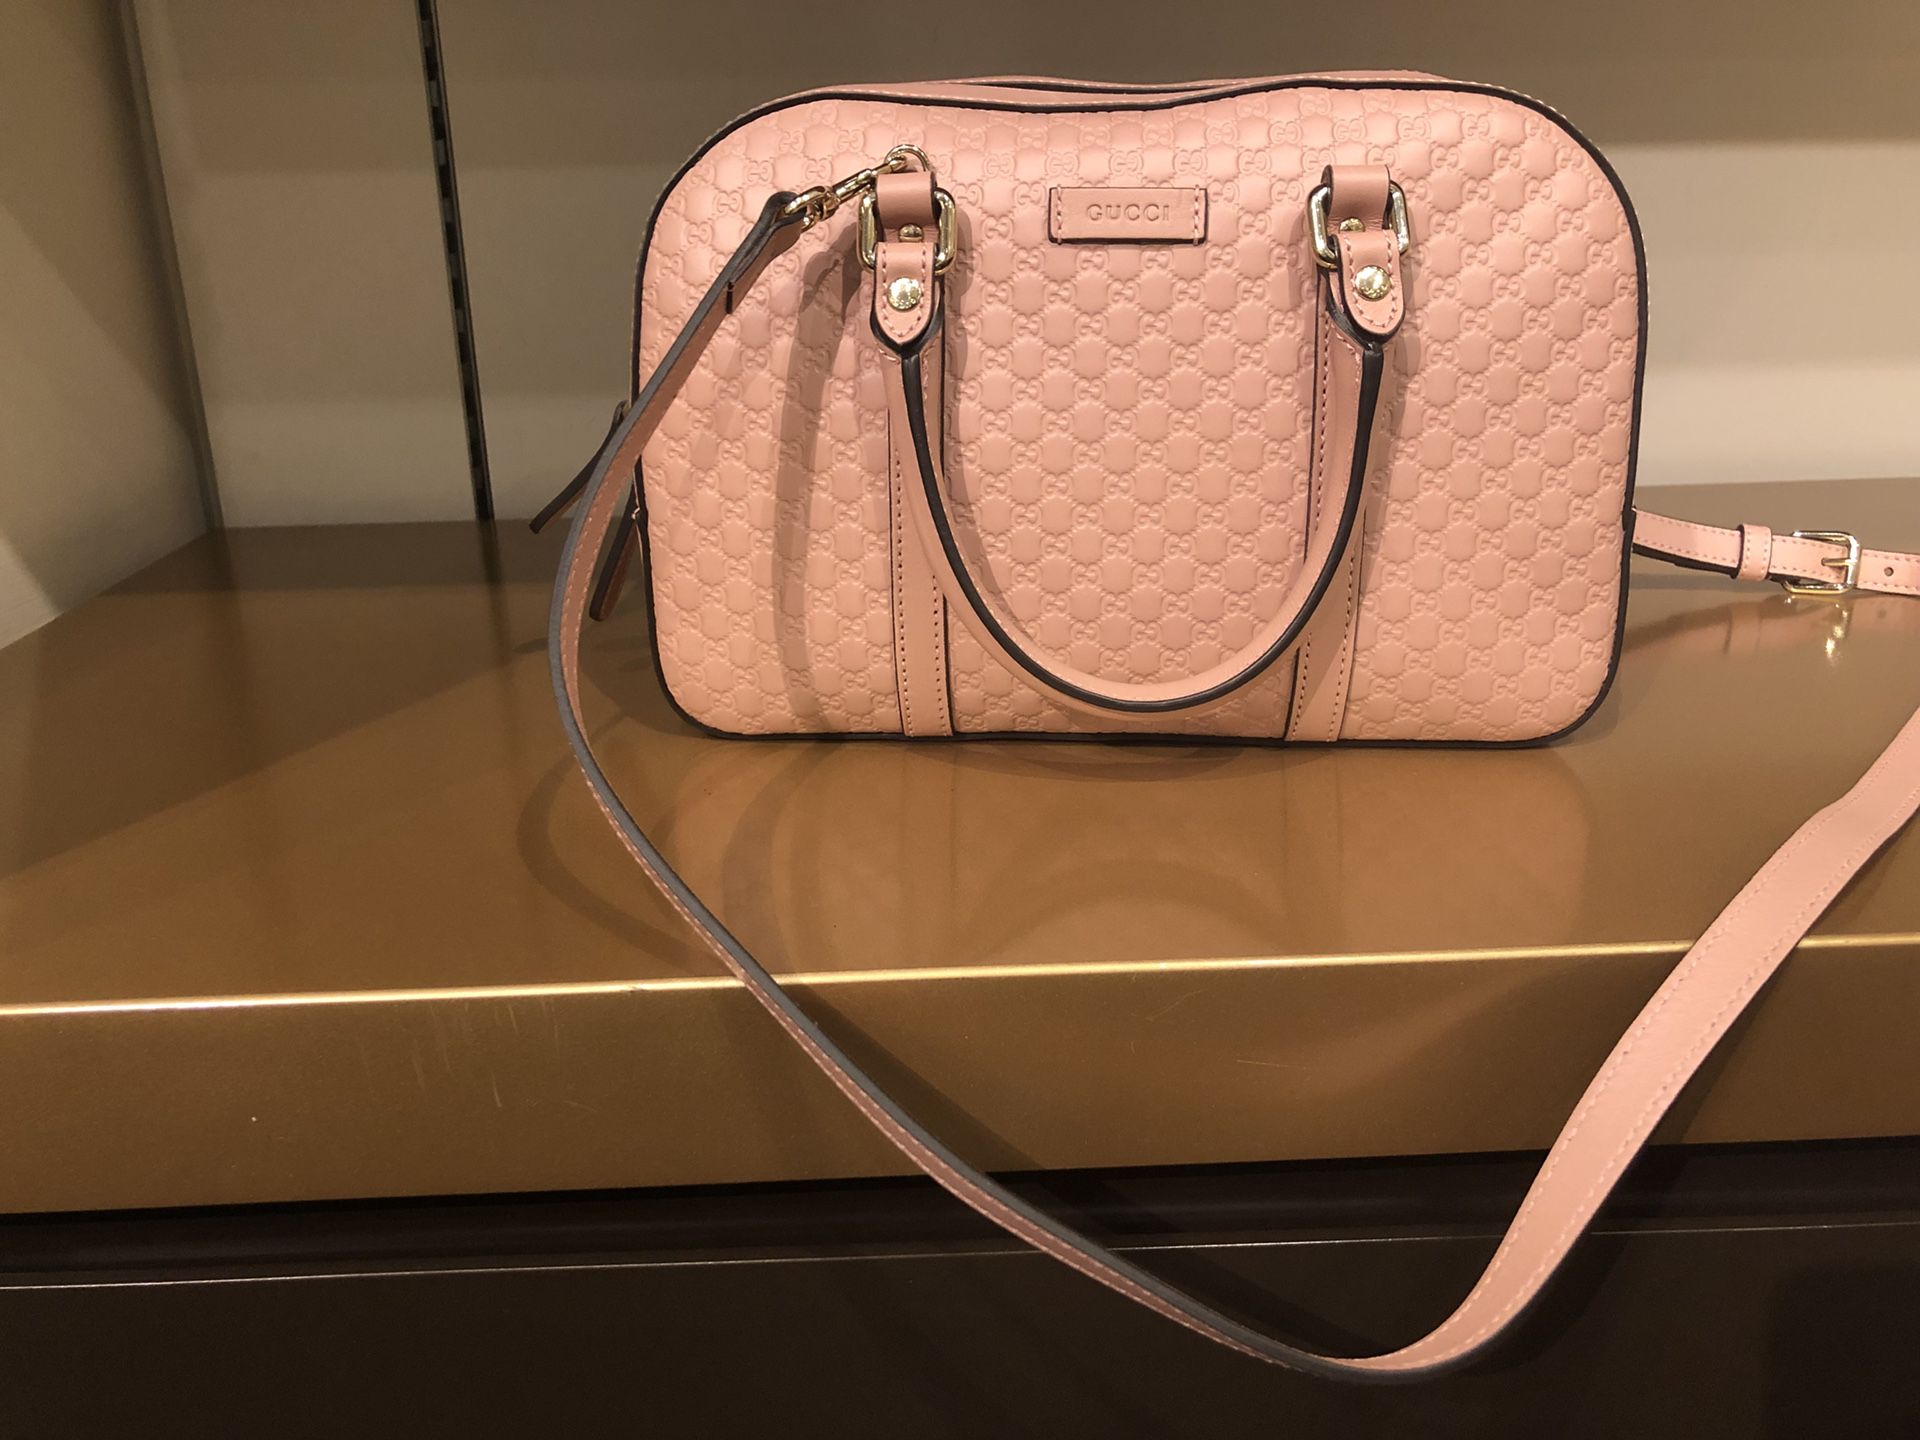 Brand new Gucci purse